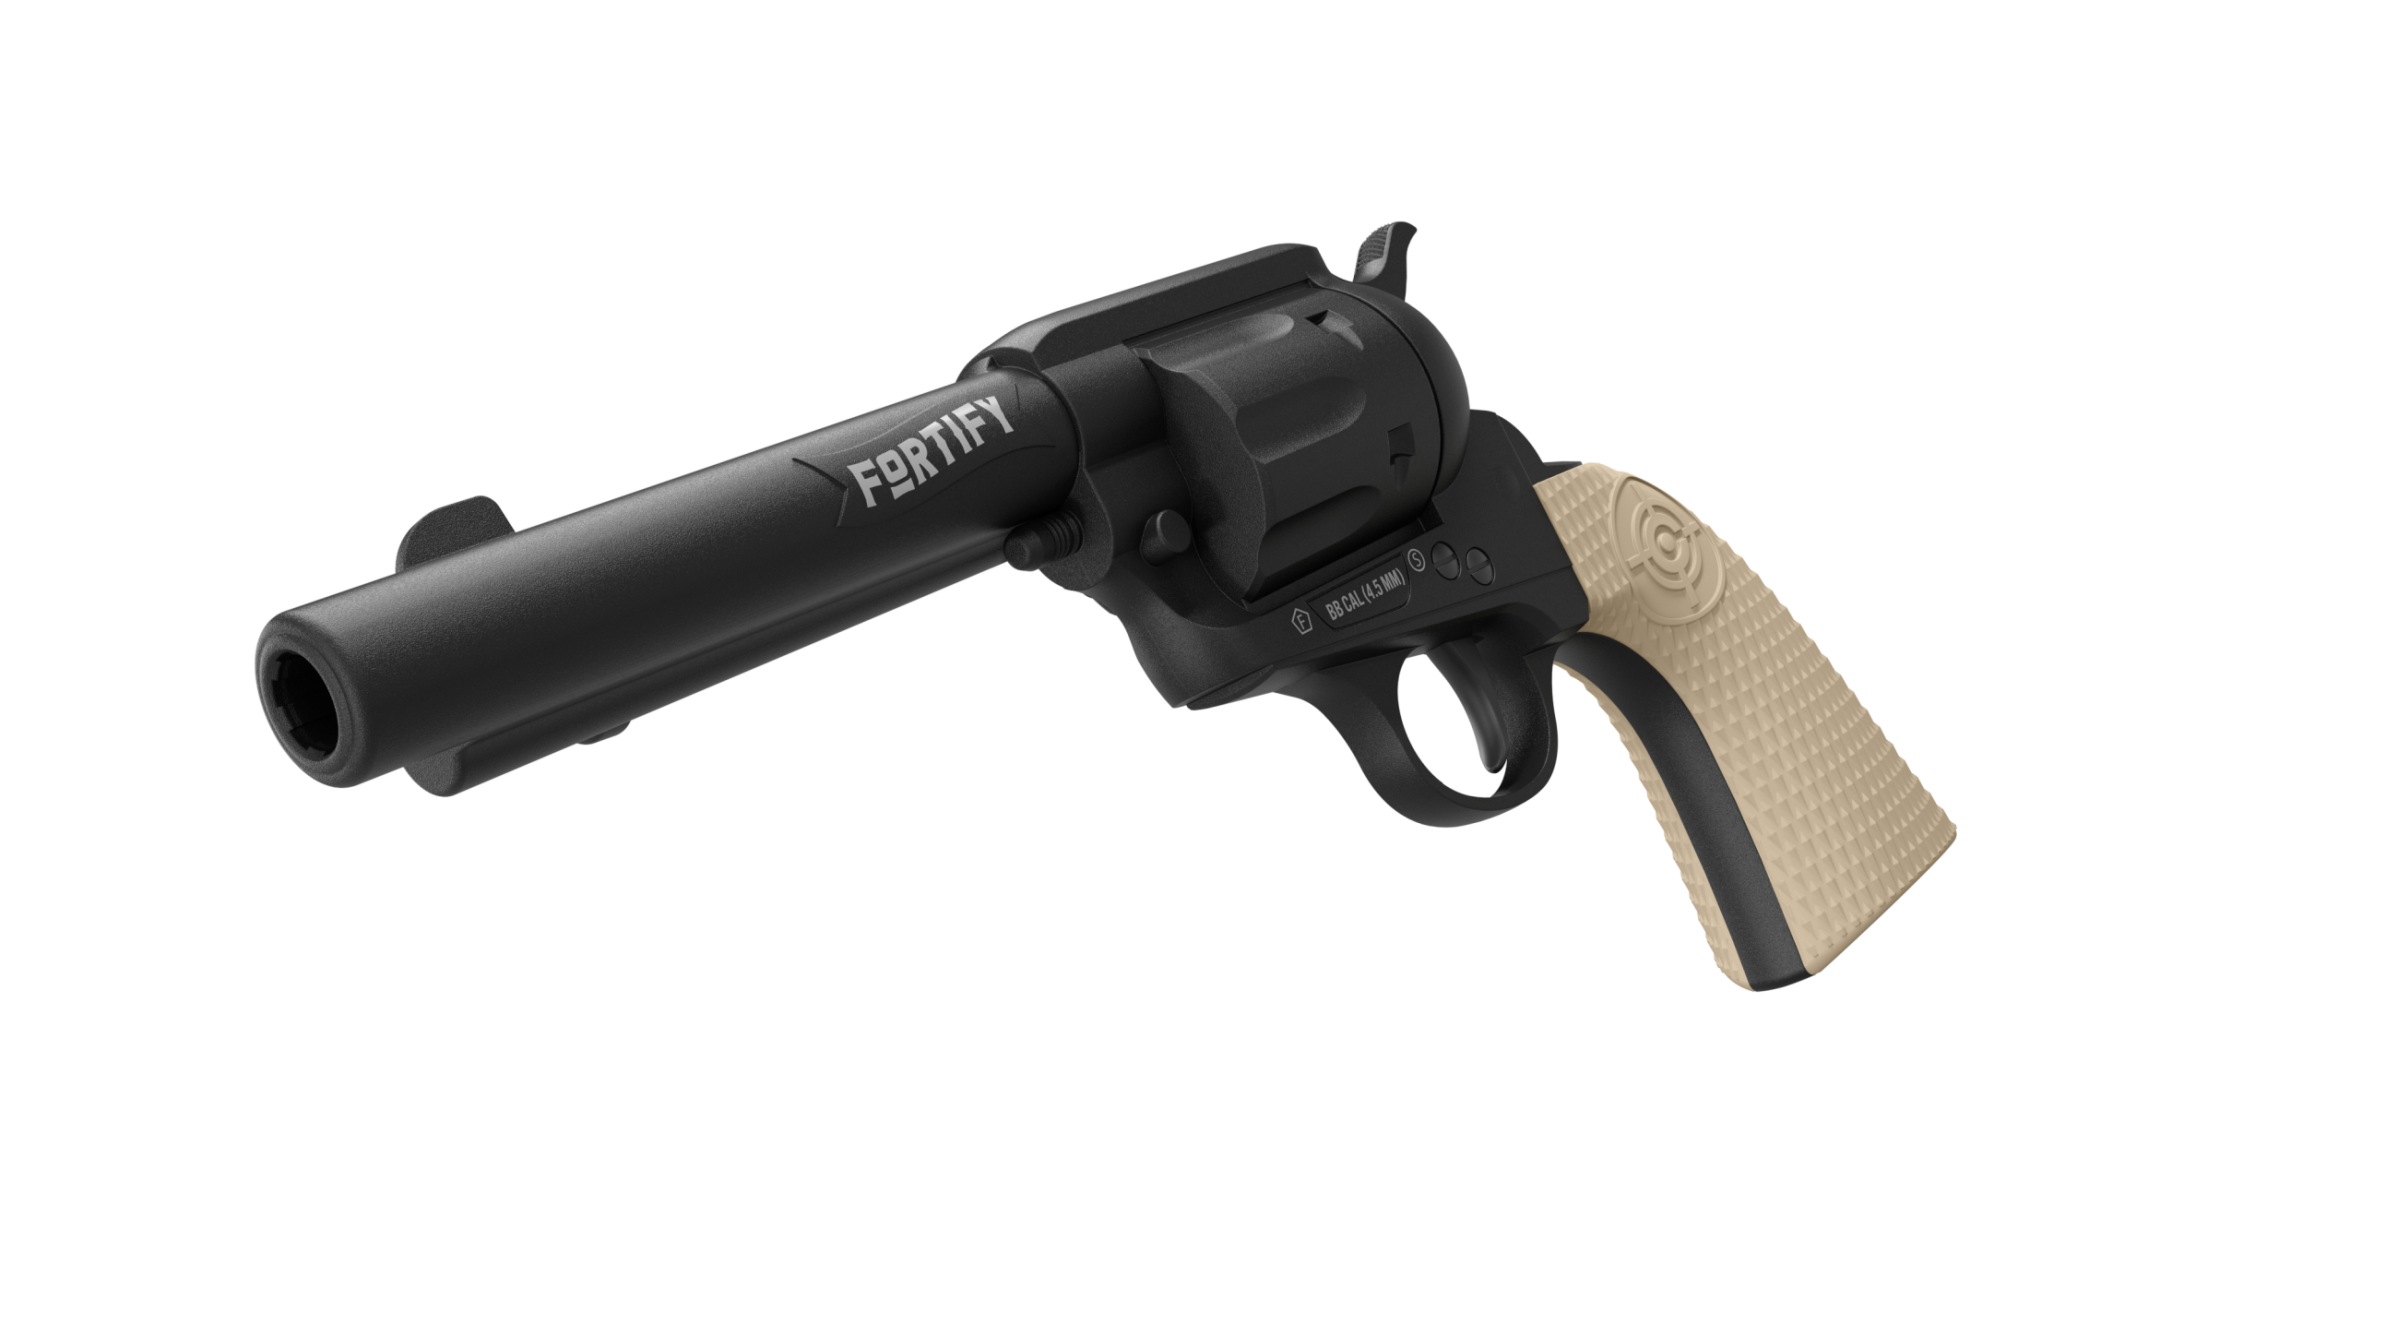 Classic Revolver Design - The New Crosman Fortify CO2 BB Revolver